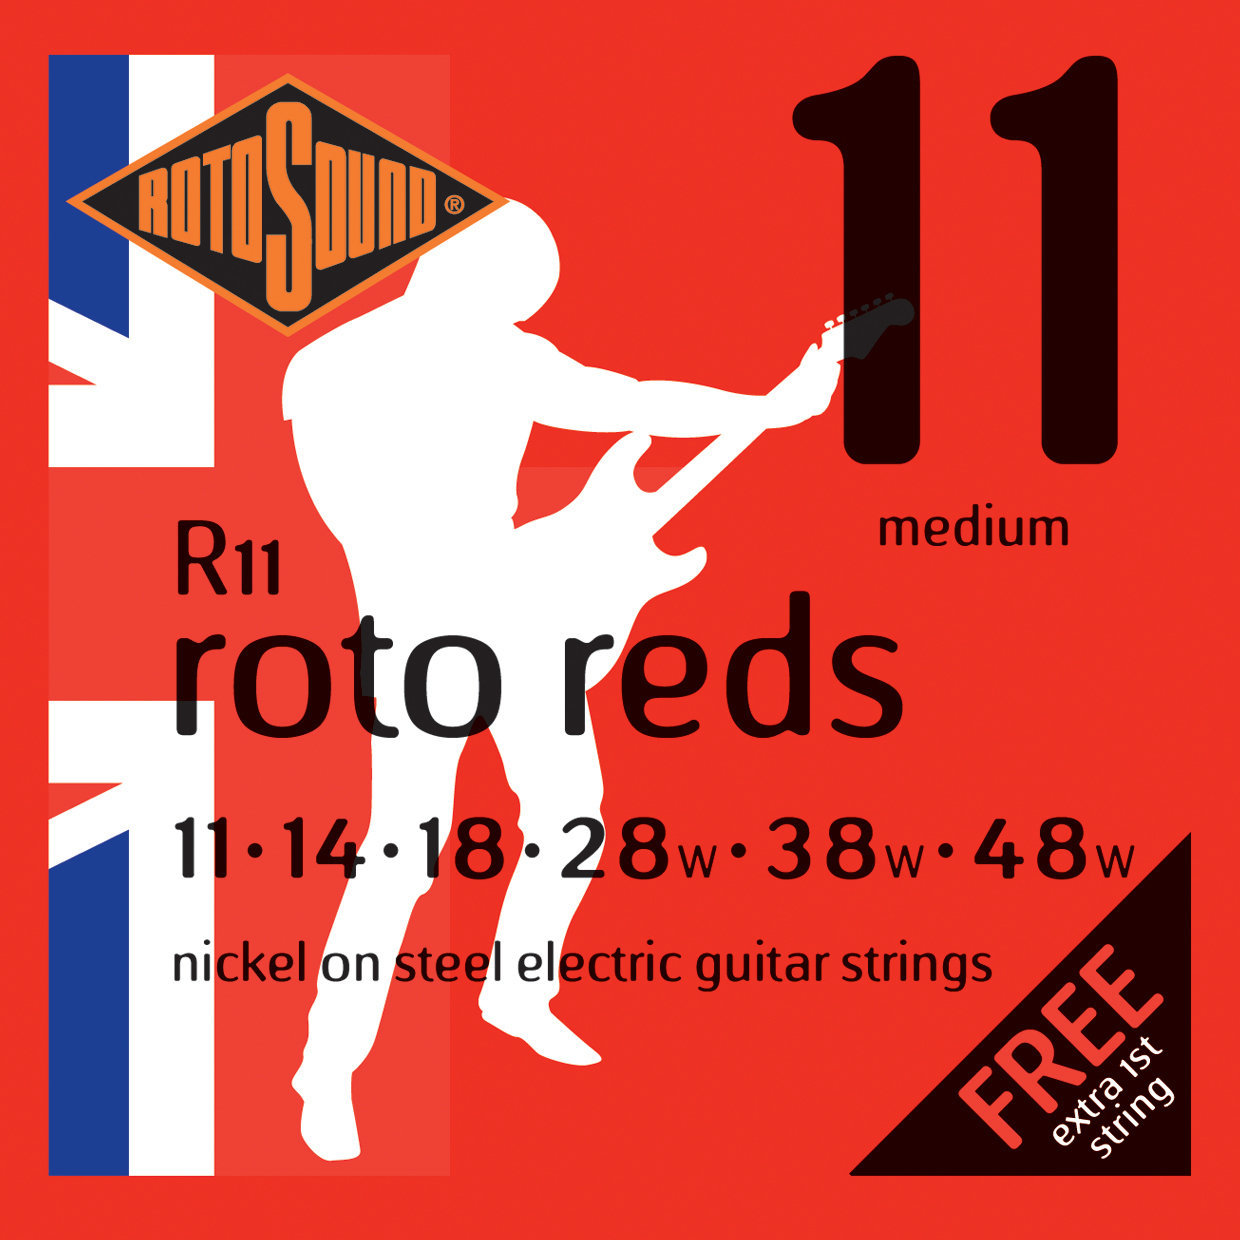 Snaren voor elektrische gitaar Rotosound R11